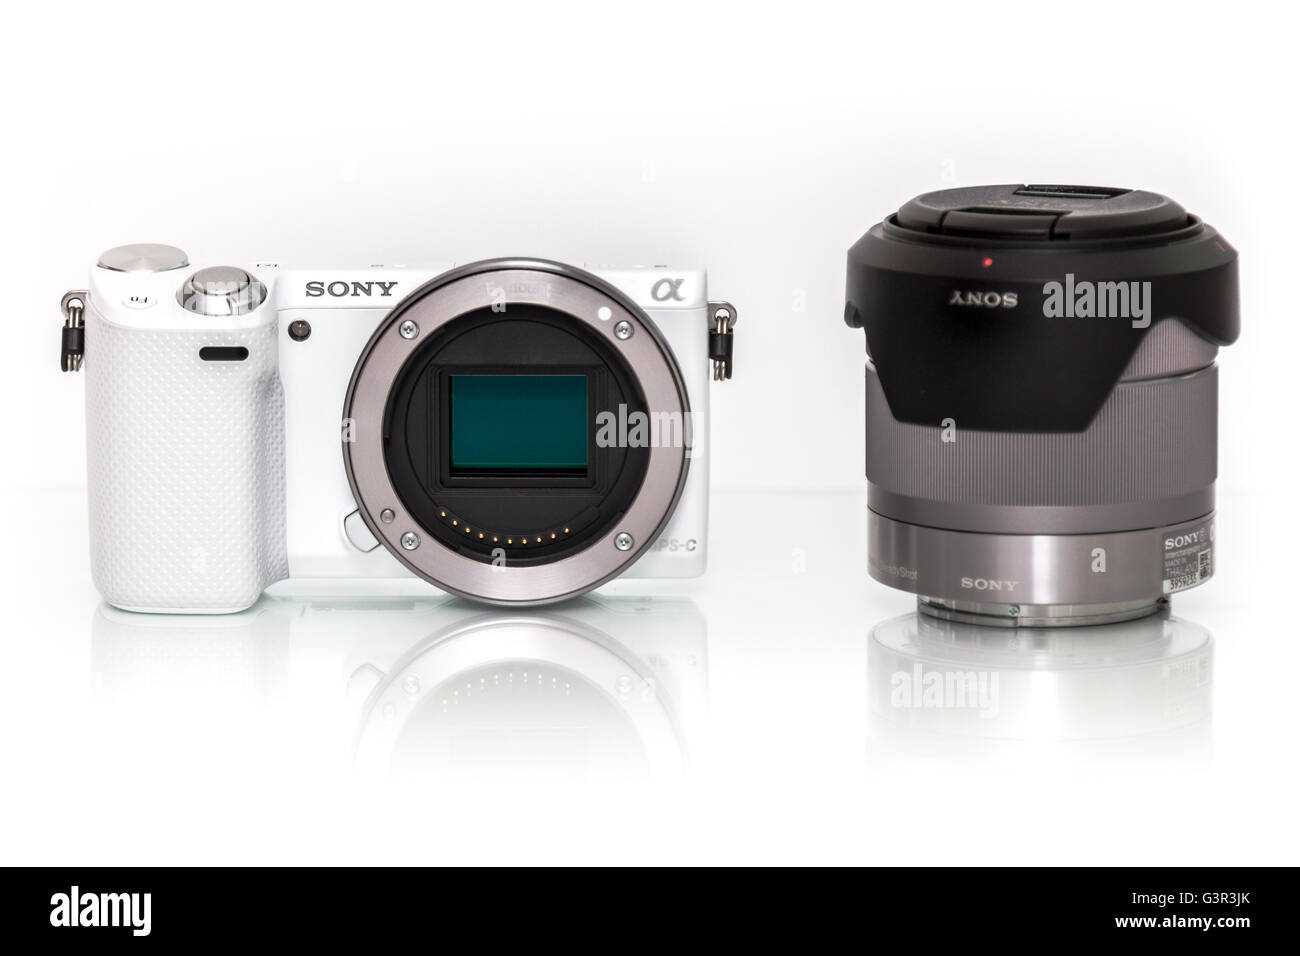 Stock Photo - Blanco Sony Alpha la cámara digital con zoom mirrorless lance, pantalla sobre un fondo blanco. Foto de stock